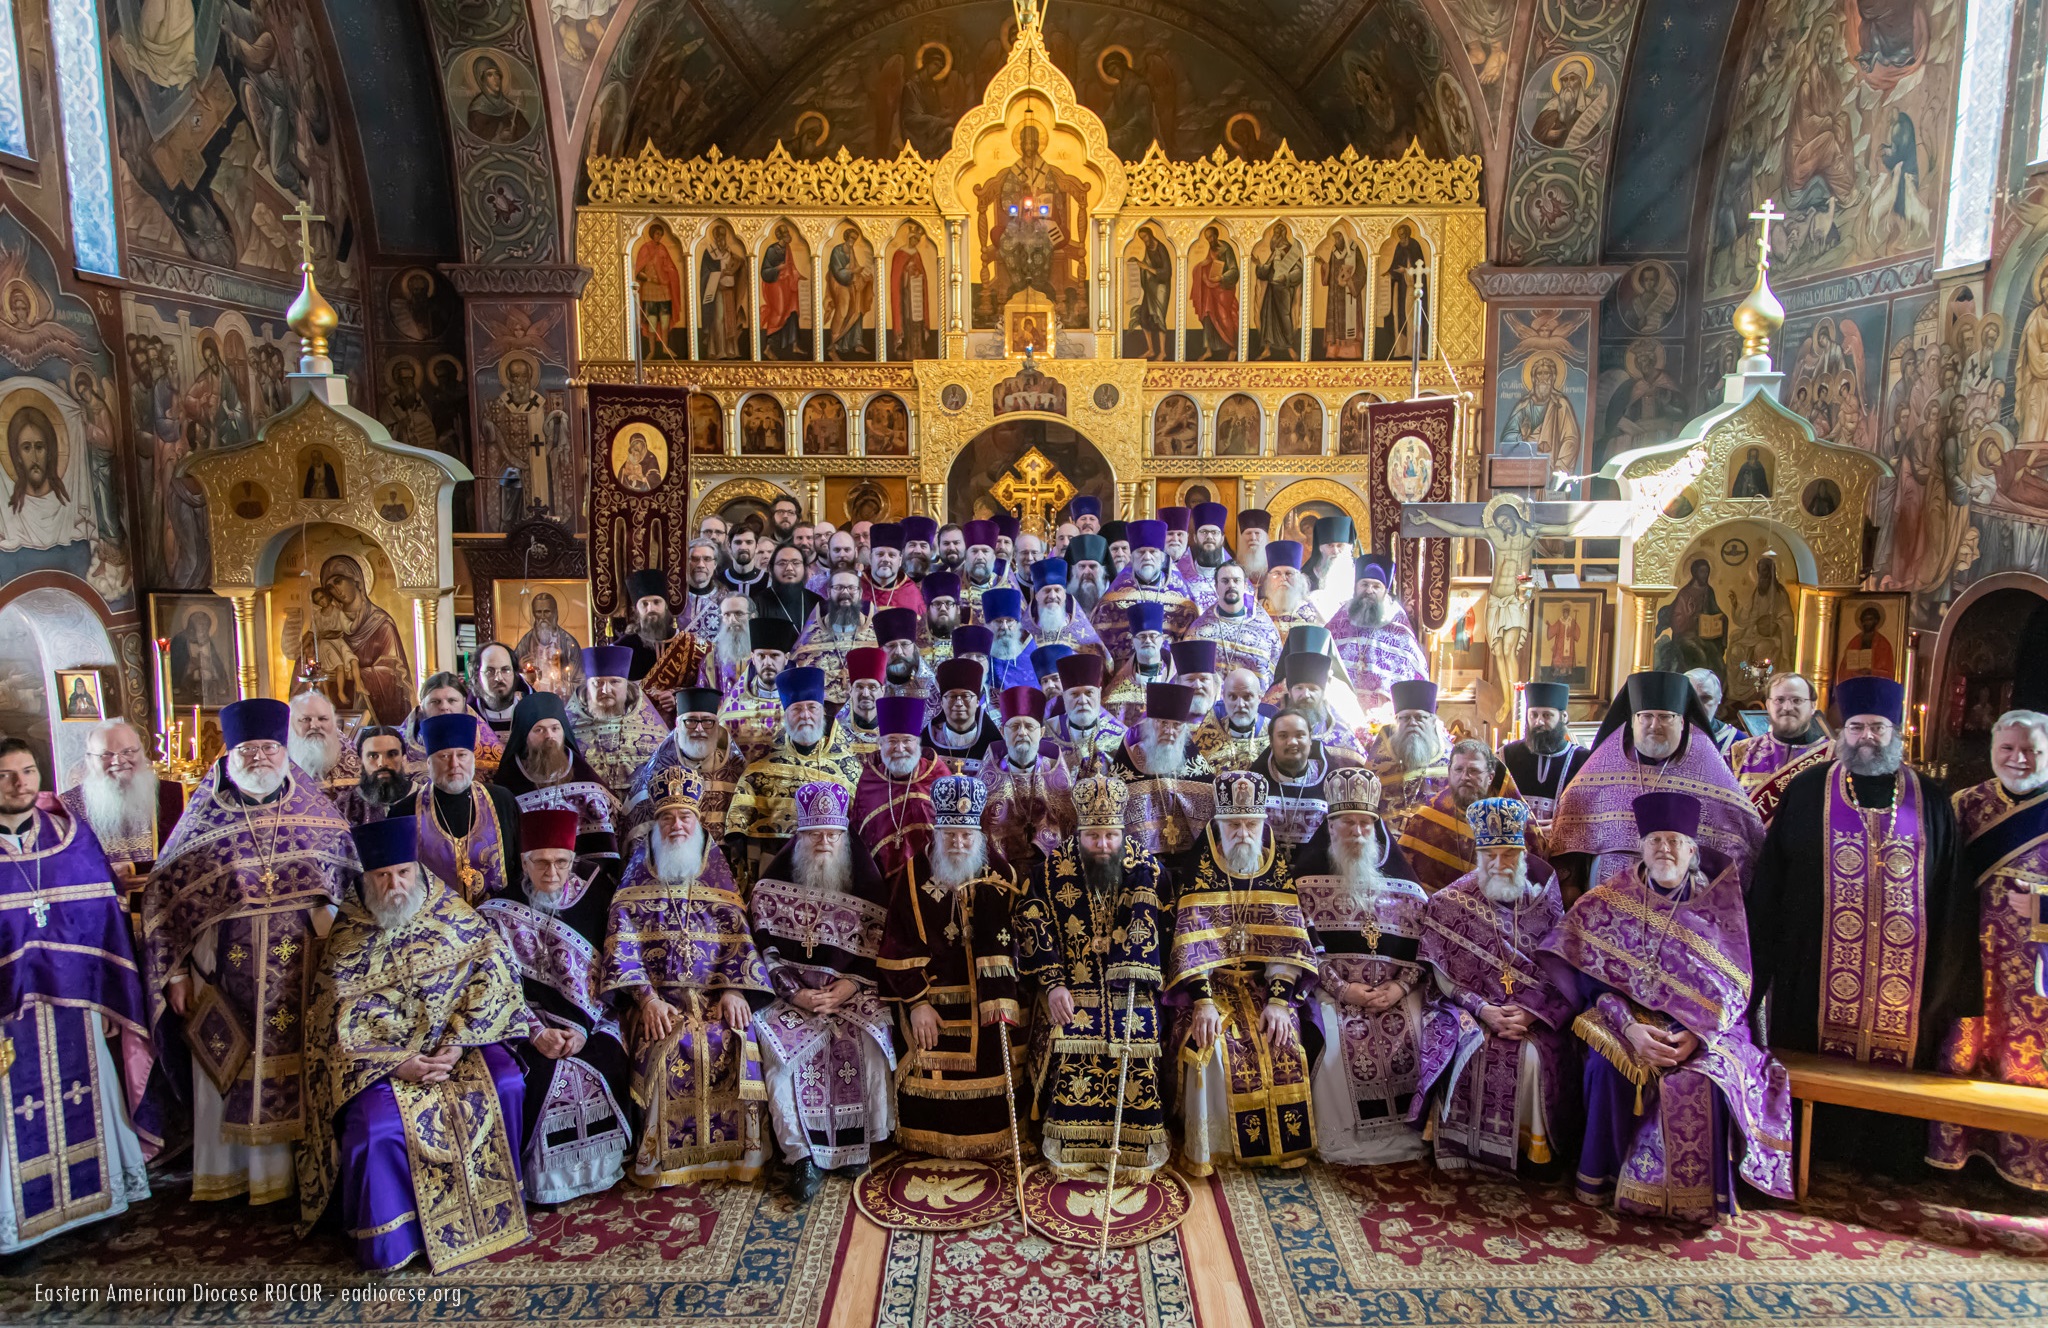 L’Église orthodoxe russe hors-frontières appelle les autorités américaines à prendre la défense de l’Église orthodoxe ukrainienne persécutée